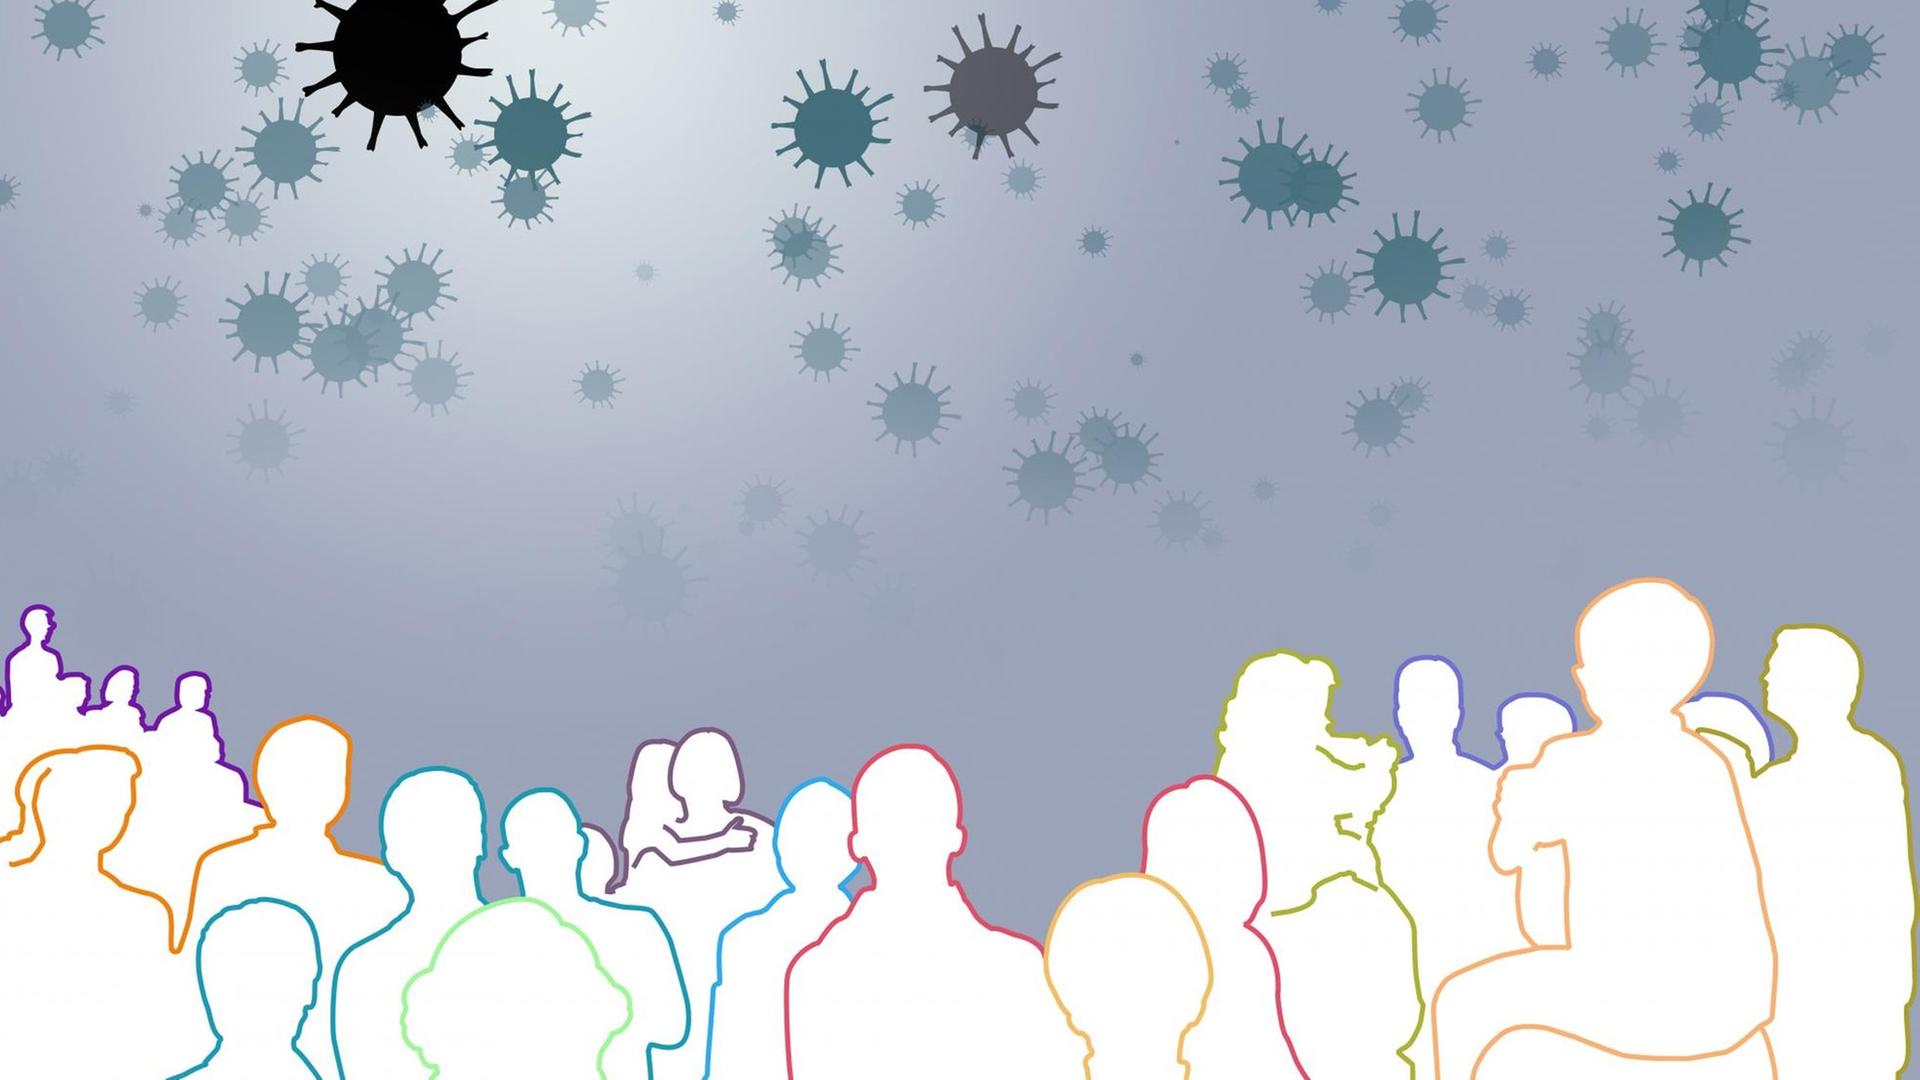 Grafische, abstrahierte Darstellung von Viren, Virengruppen und einer Menschengruppe auf weißem Hintergrund.